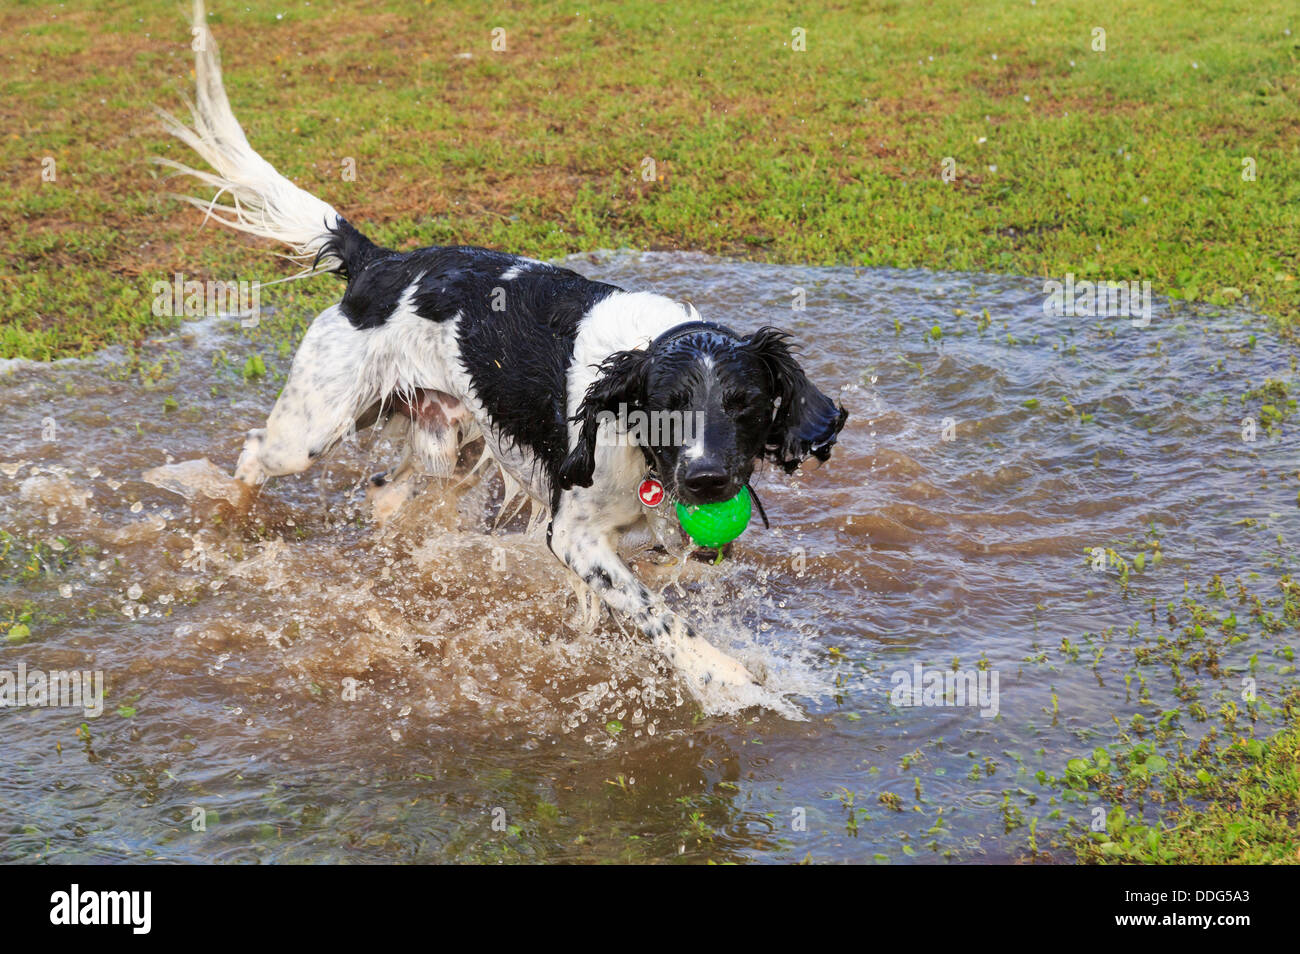 Un bagnato in bianco e nero adulto English Springer Spaniel cane divertendosi in esecuzione in una pozza d'acqua con una sfera. Inghilterra, Regno Unito, Gran Bretagna Foto Stock